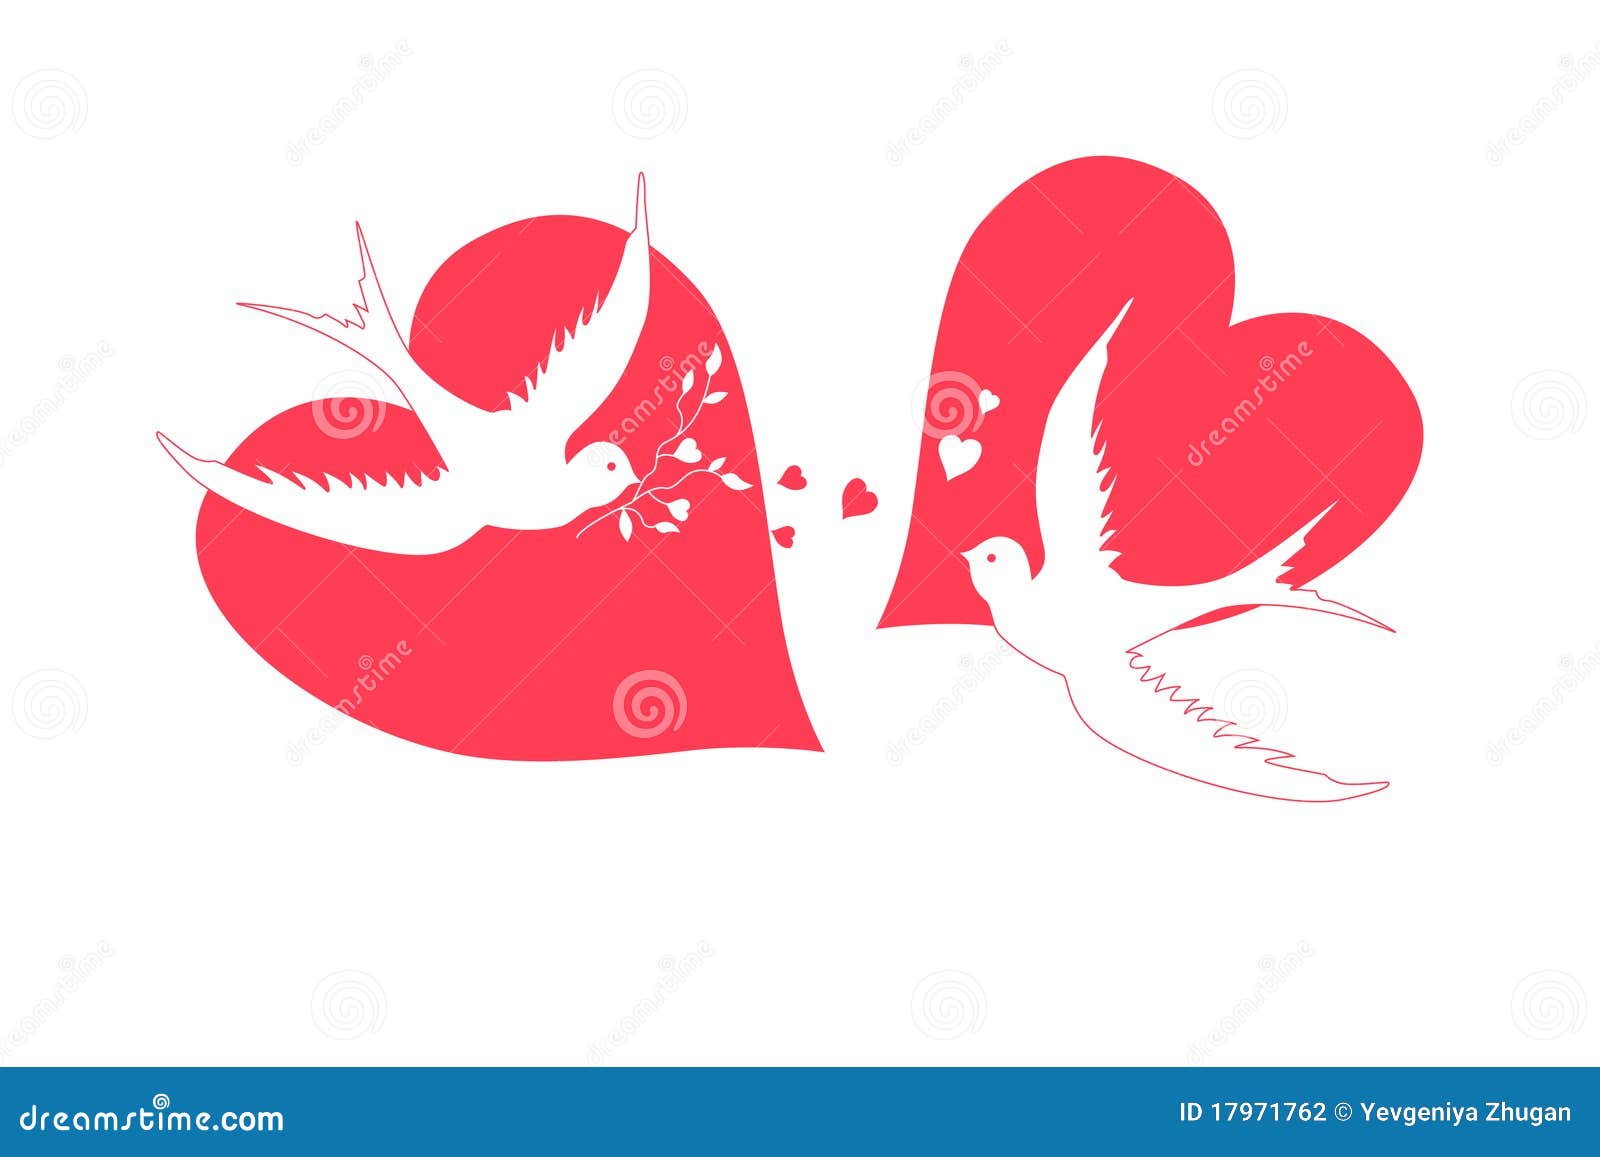 Твое сердце птица. Сердце с птичкой. Птички на сердечке. Сердце птицы иллюстрация. Весточки птички сердце.